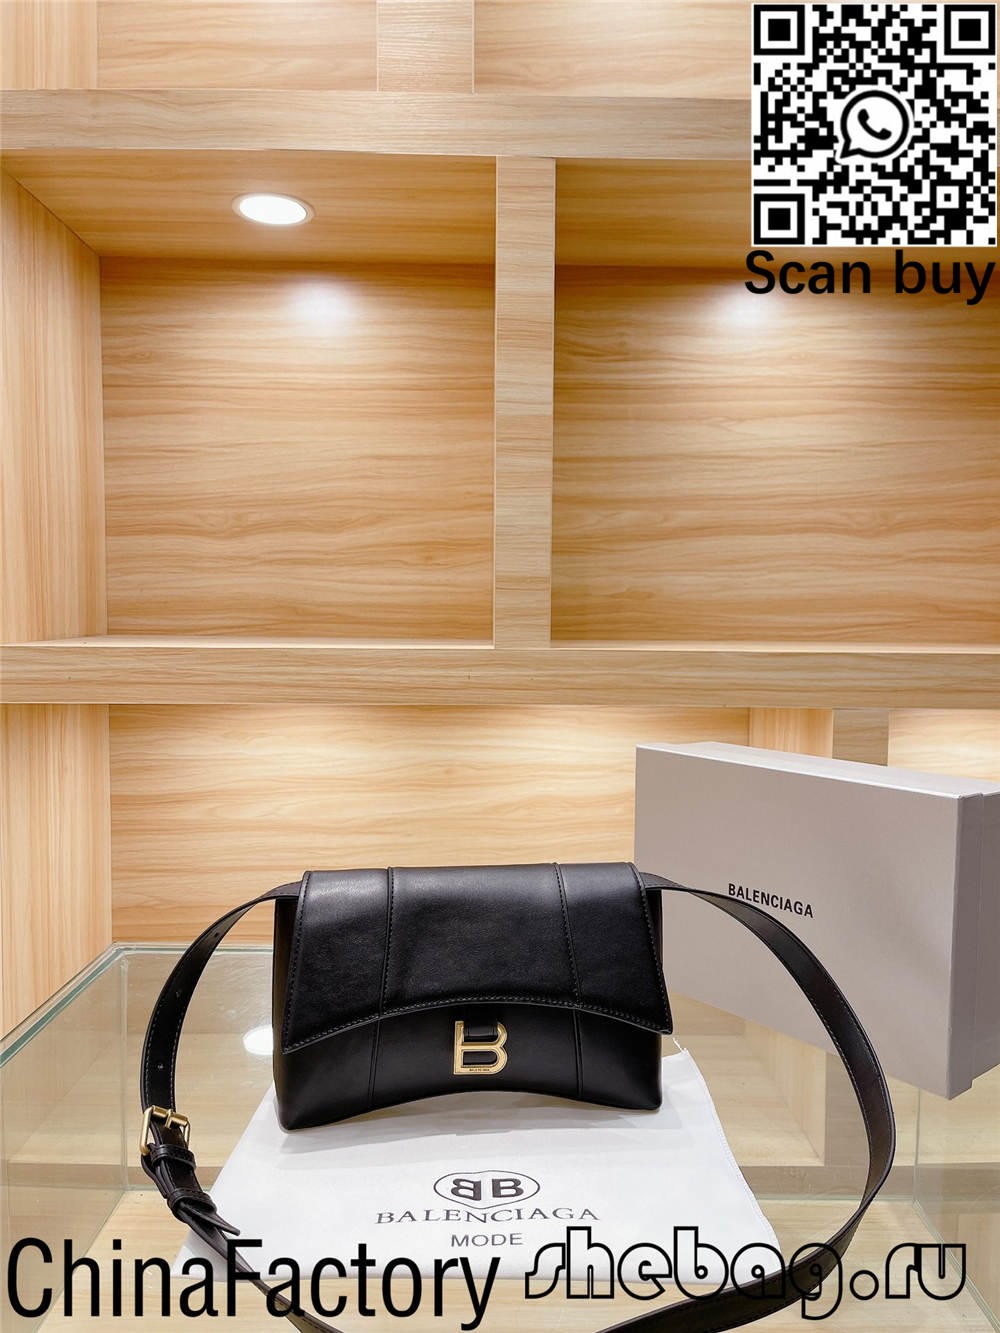 Como comprar réplicas de bolsos Balenciaga baratos en Hong Kong? (Actualizado 2022) - Tenda en liña de bolsas Louis Vuitton falsas de mellor calidade, réplica de bolsas de deseño ru